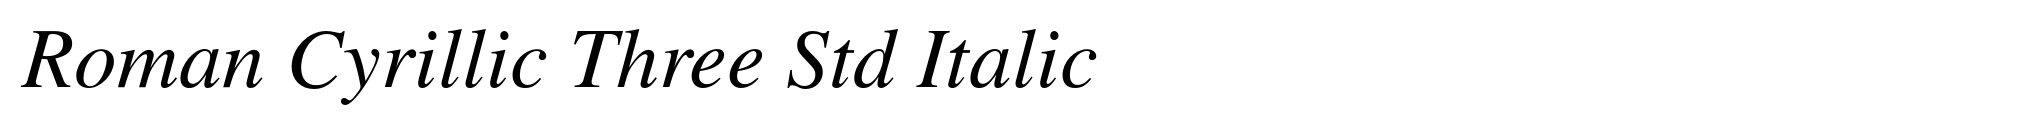 Roman Cyrillic Three Std Italic image